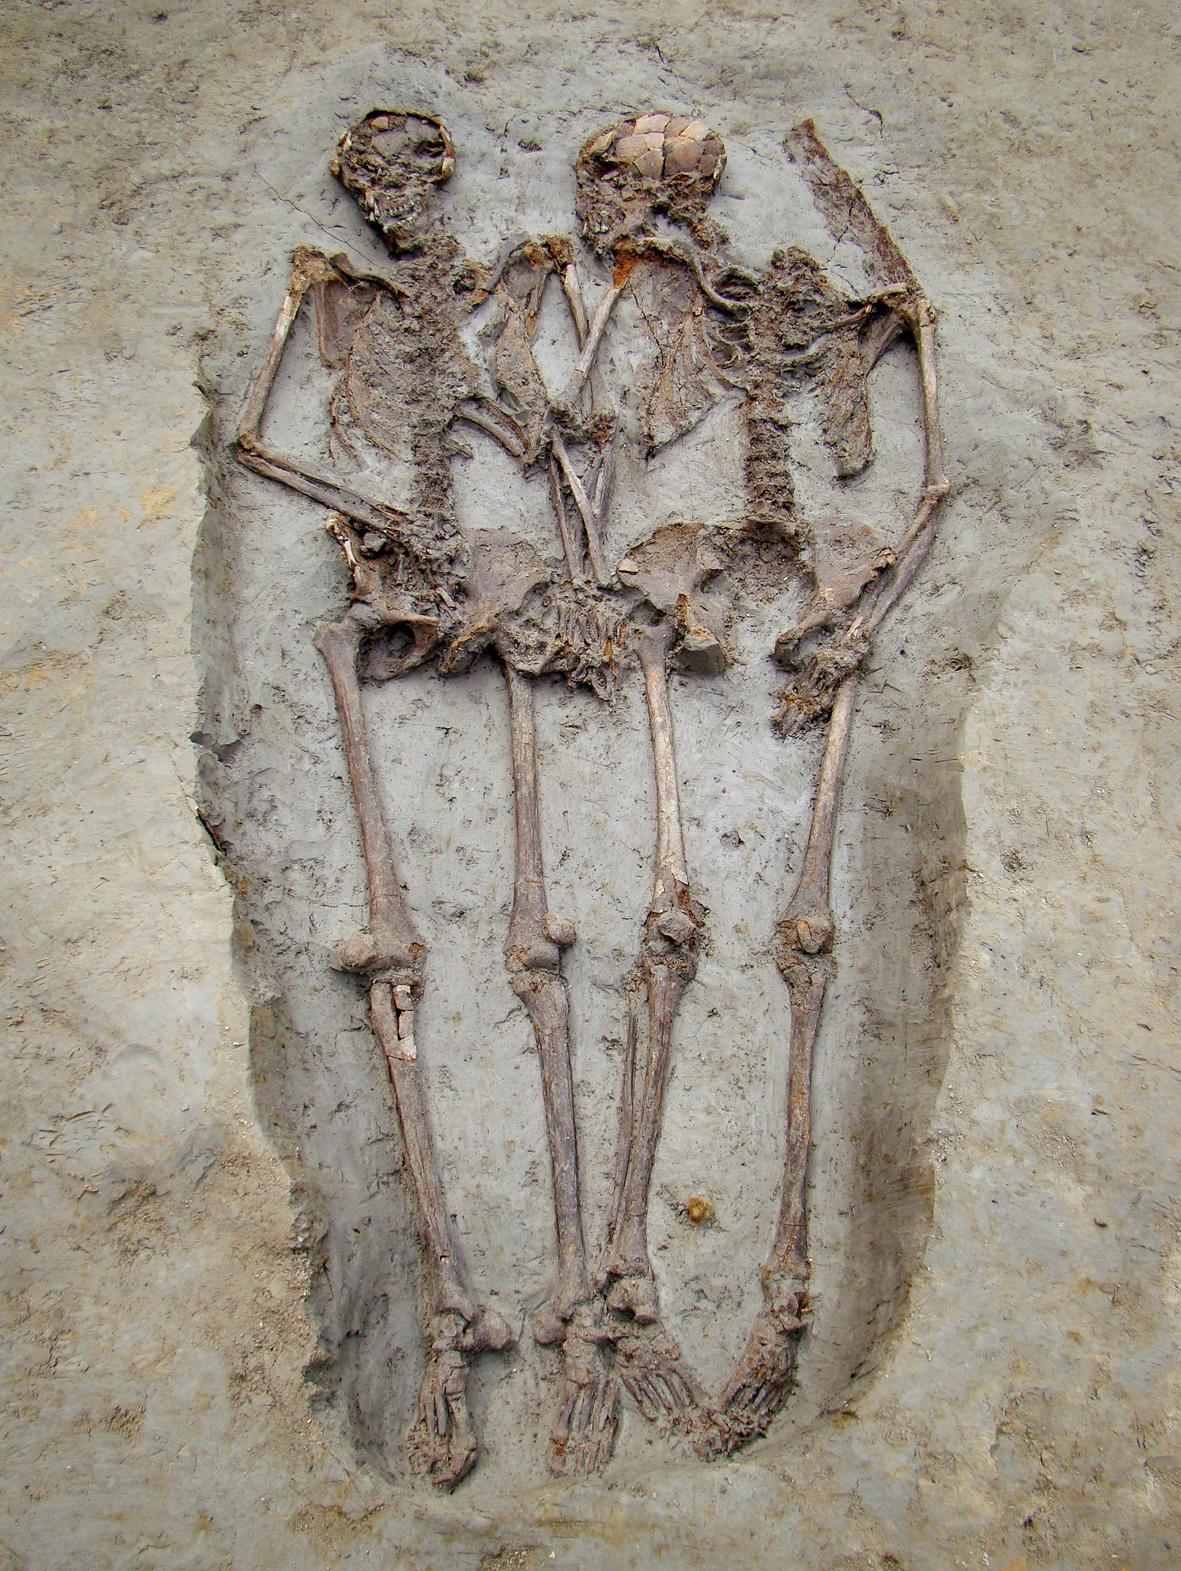 La sépulture antique tardive dite "Les amants de Modène", trouvée dans la viale Ciro Menotti, avec les deux défunts enterrés main dans la main. [wikimedia/ CC BY-SA 3.0 - Paolo Terzi - Archivio fotografico Museo Civico di Modena]